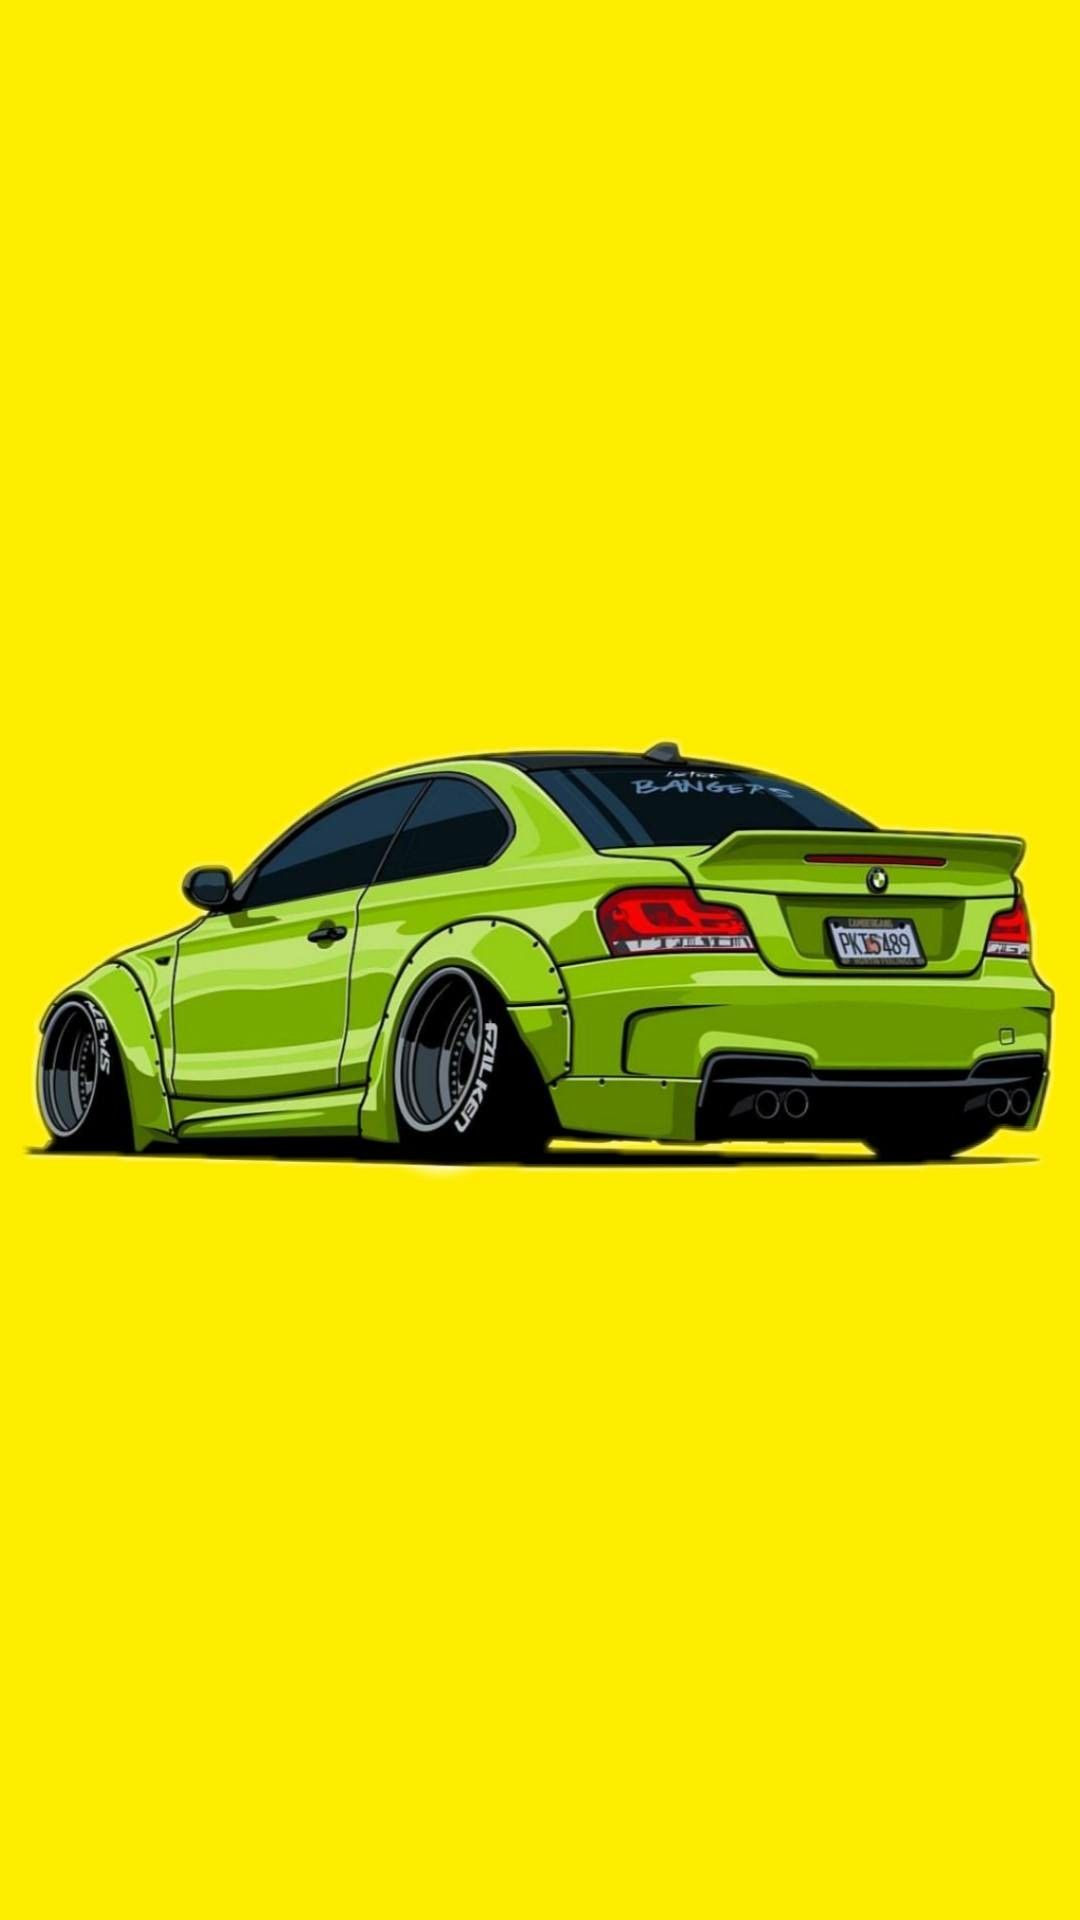 Green car yellow background. Desenhos de carros, Carros rebaixados desenho, Carros legais